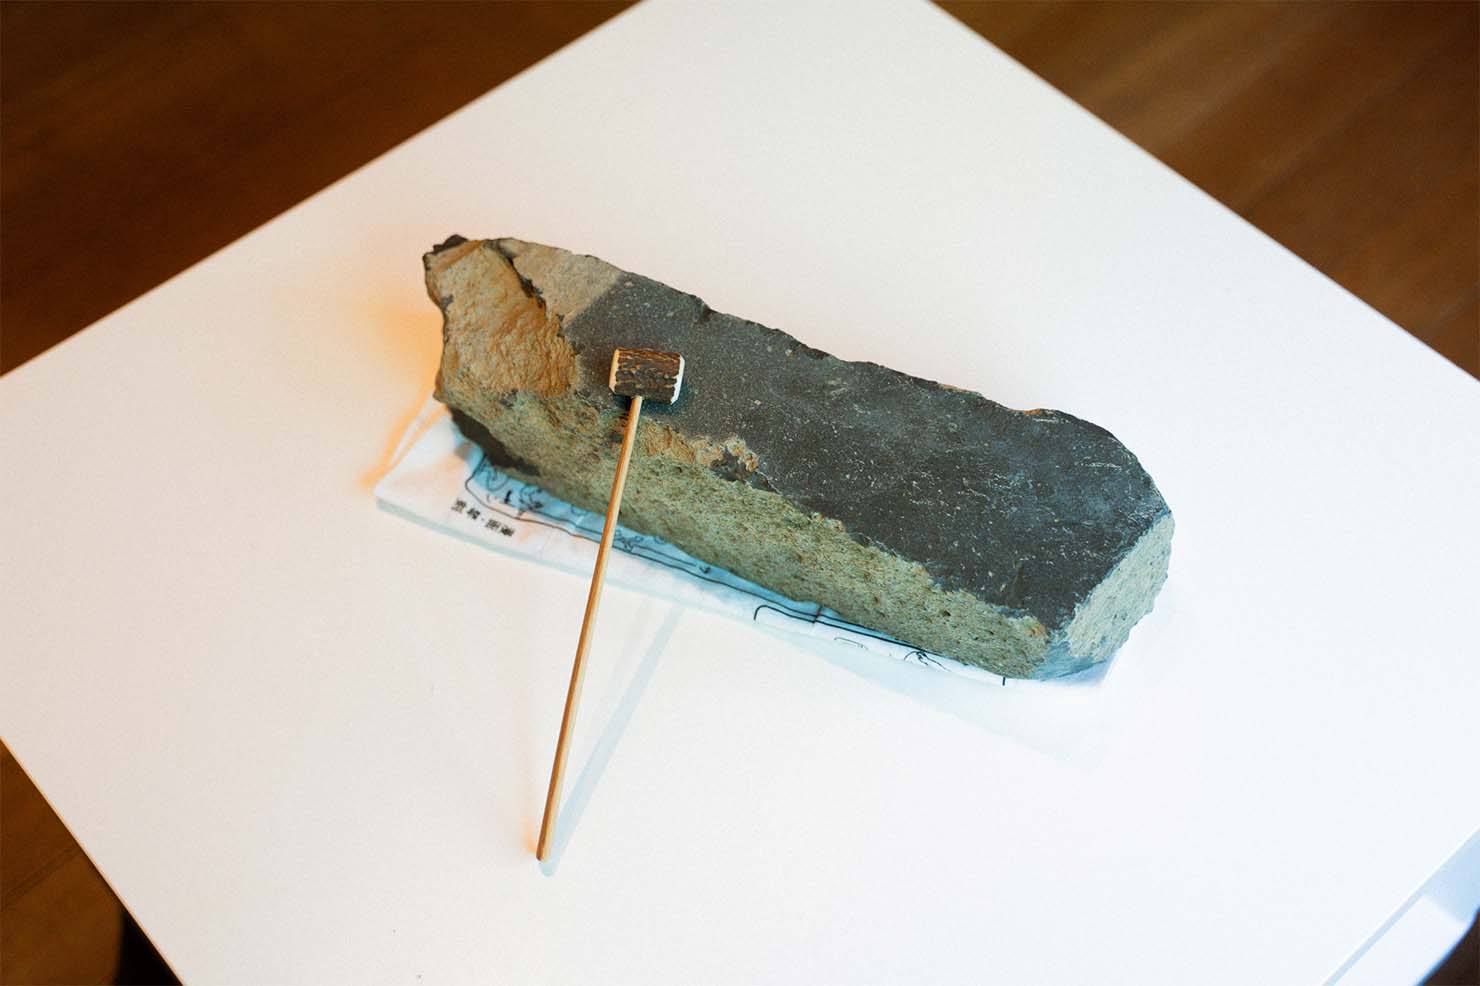 約1300万年前の瀬戸内海地域の火山活動によってできたものと考えられており、「讃岐」から名付けられている。 （出典：香川大学博物館）